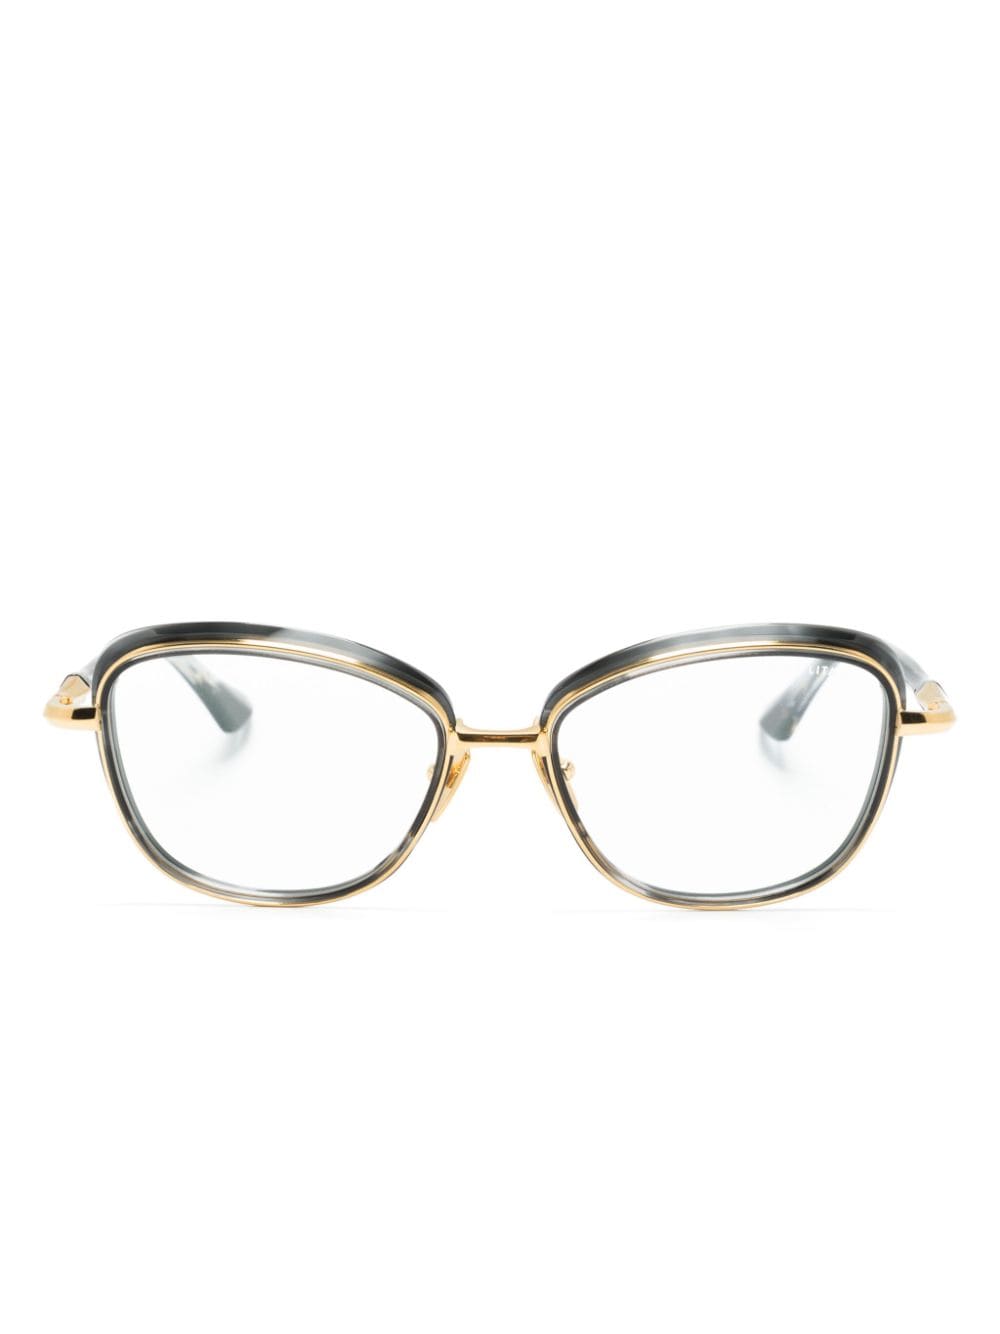 Litavu square-frame glasses